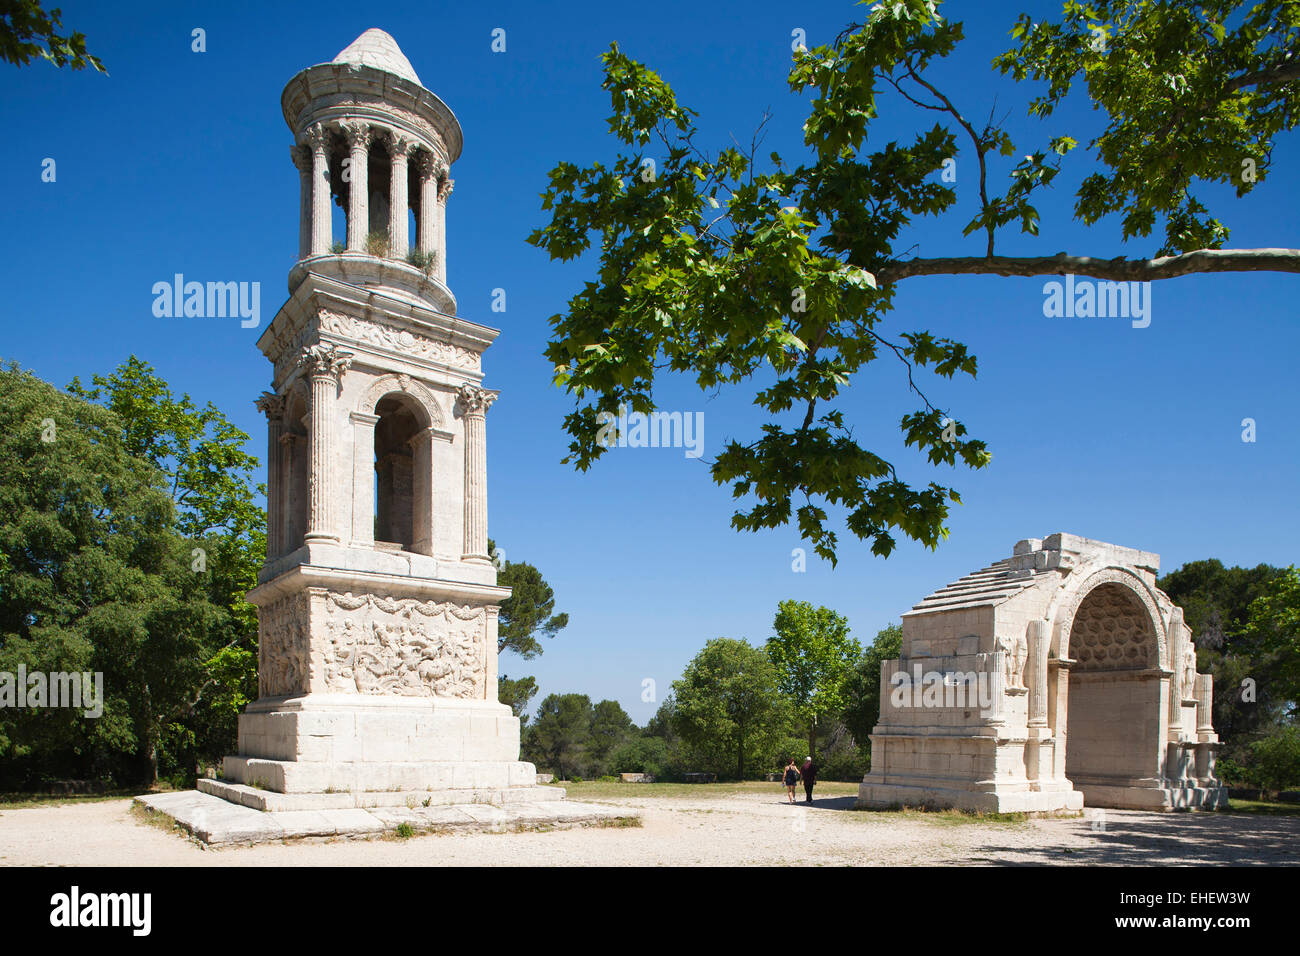 mausoleum and triumphal arch; glanum archaeological site, saint-remy de provence, les alpilles area, provence, france, europe Stock Photo